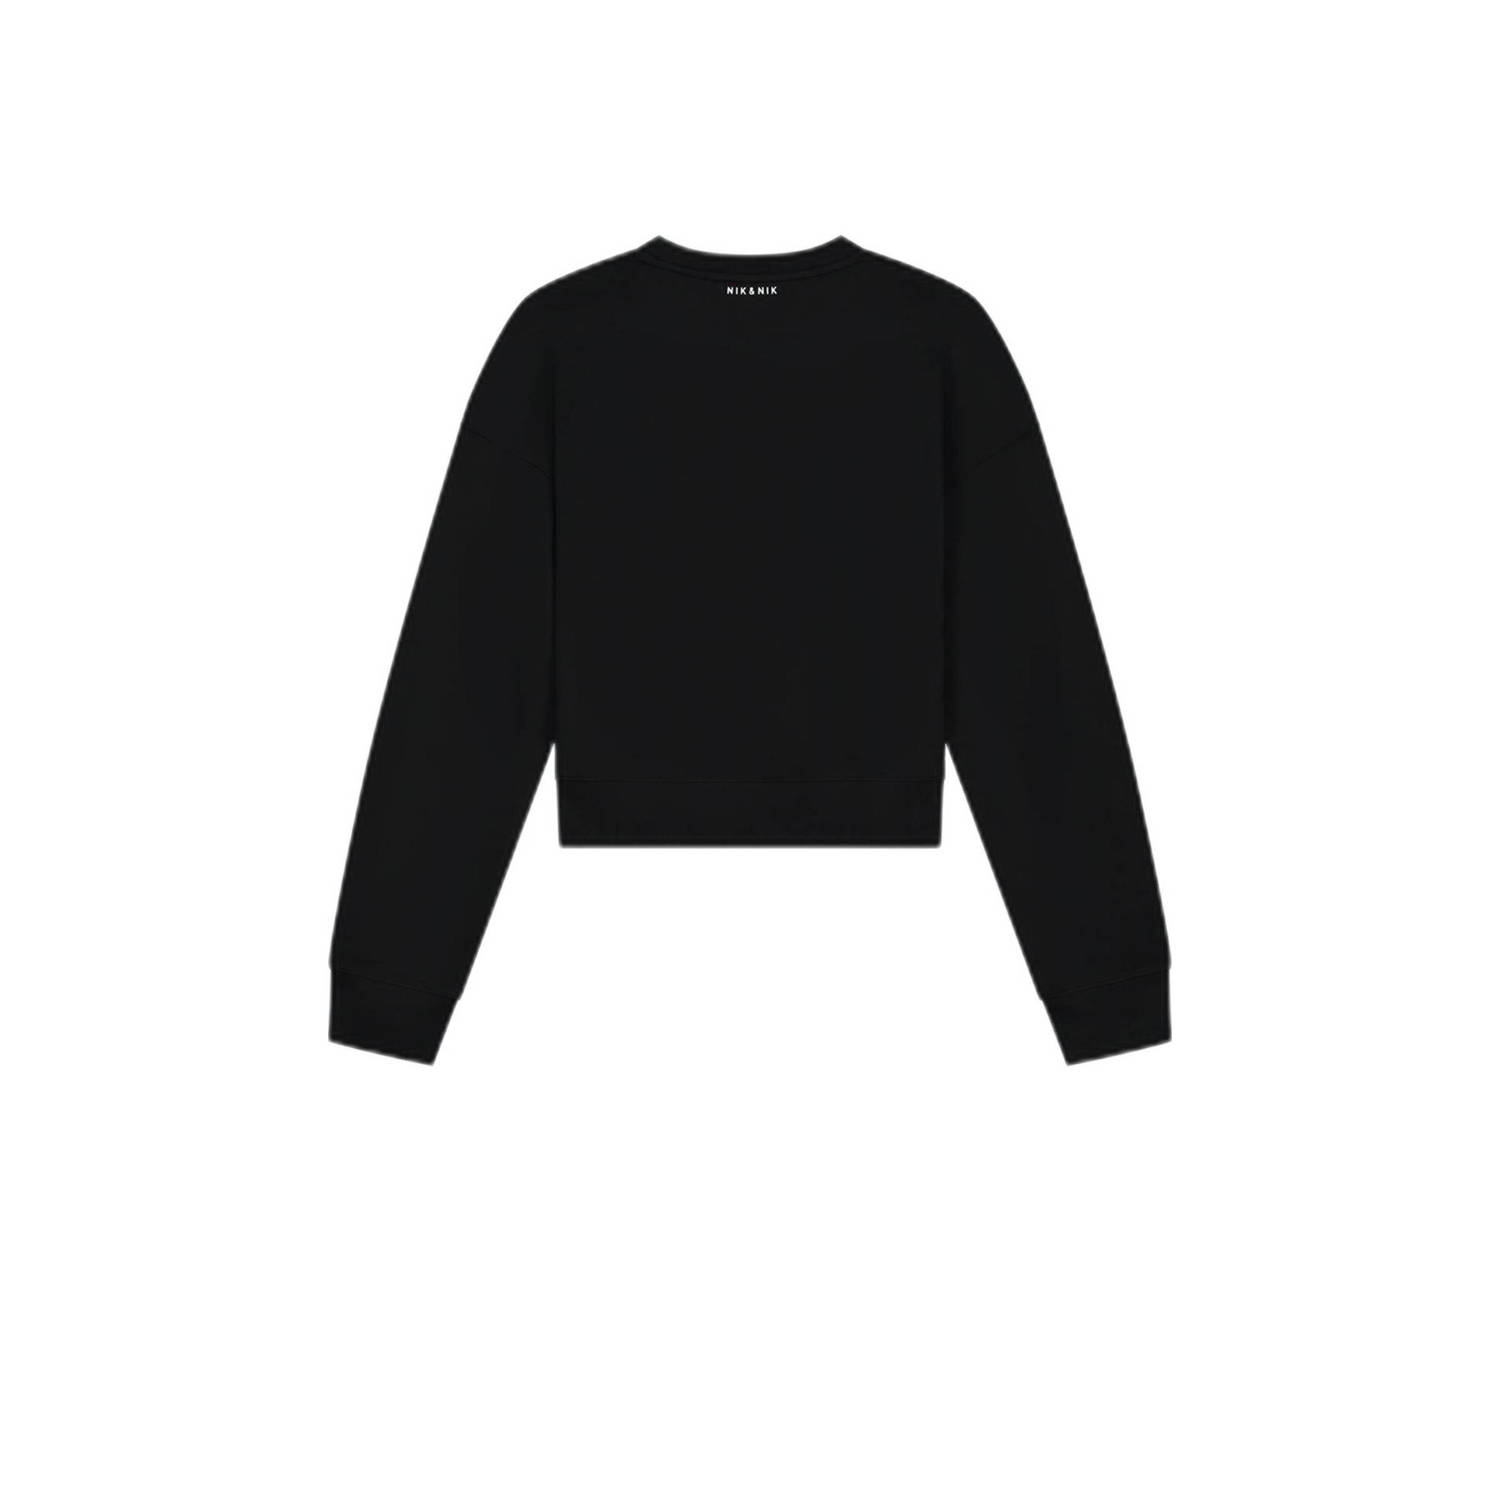 NIK&NIK sweater met logo zwart